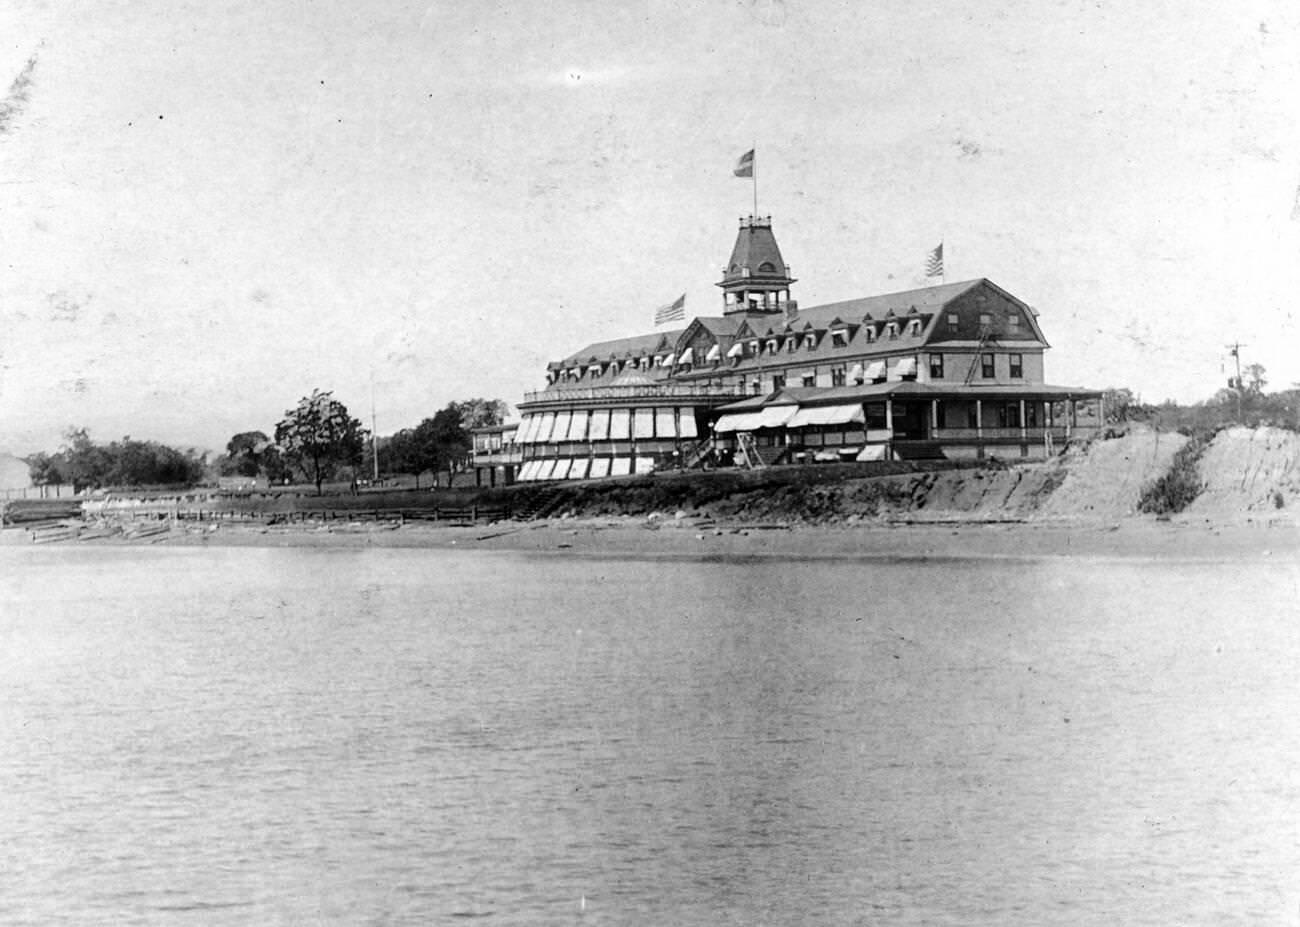 Terra Marine Inn Viewed From The Ocean, Huguenot, Staten Island, 1900.